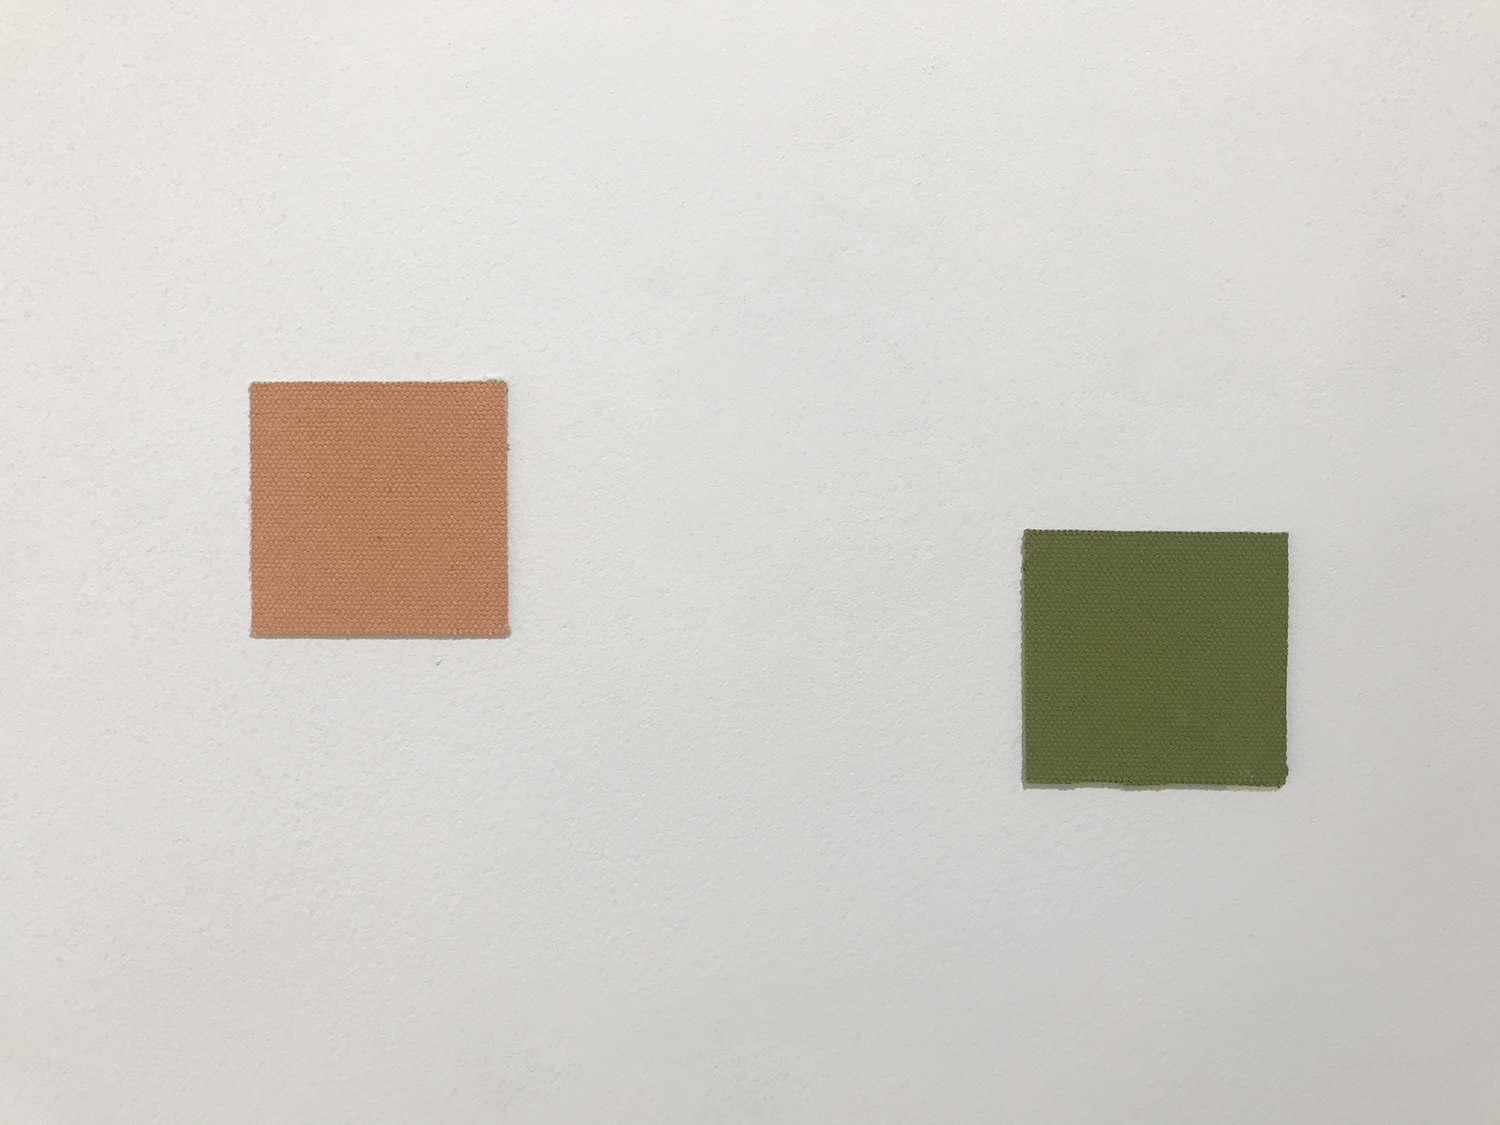 アンドレアス・カール・シュルツェ｜ANDREAS KARL SCHULZE<br>5 colored cotton square, 5 x 5 cm each, 1995 (detail)